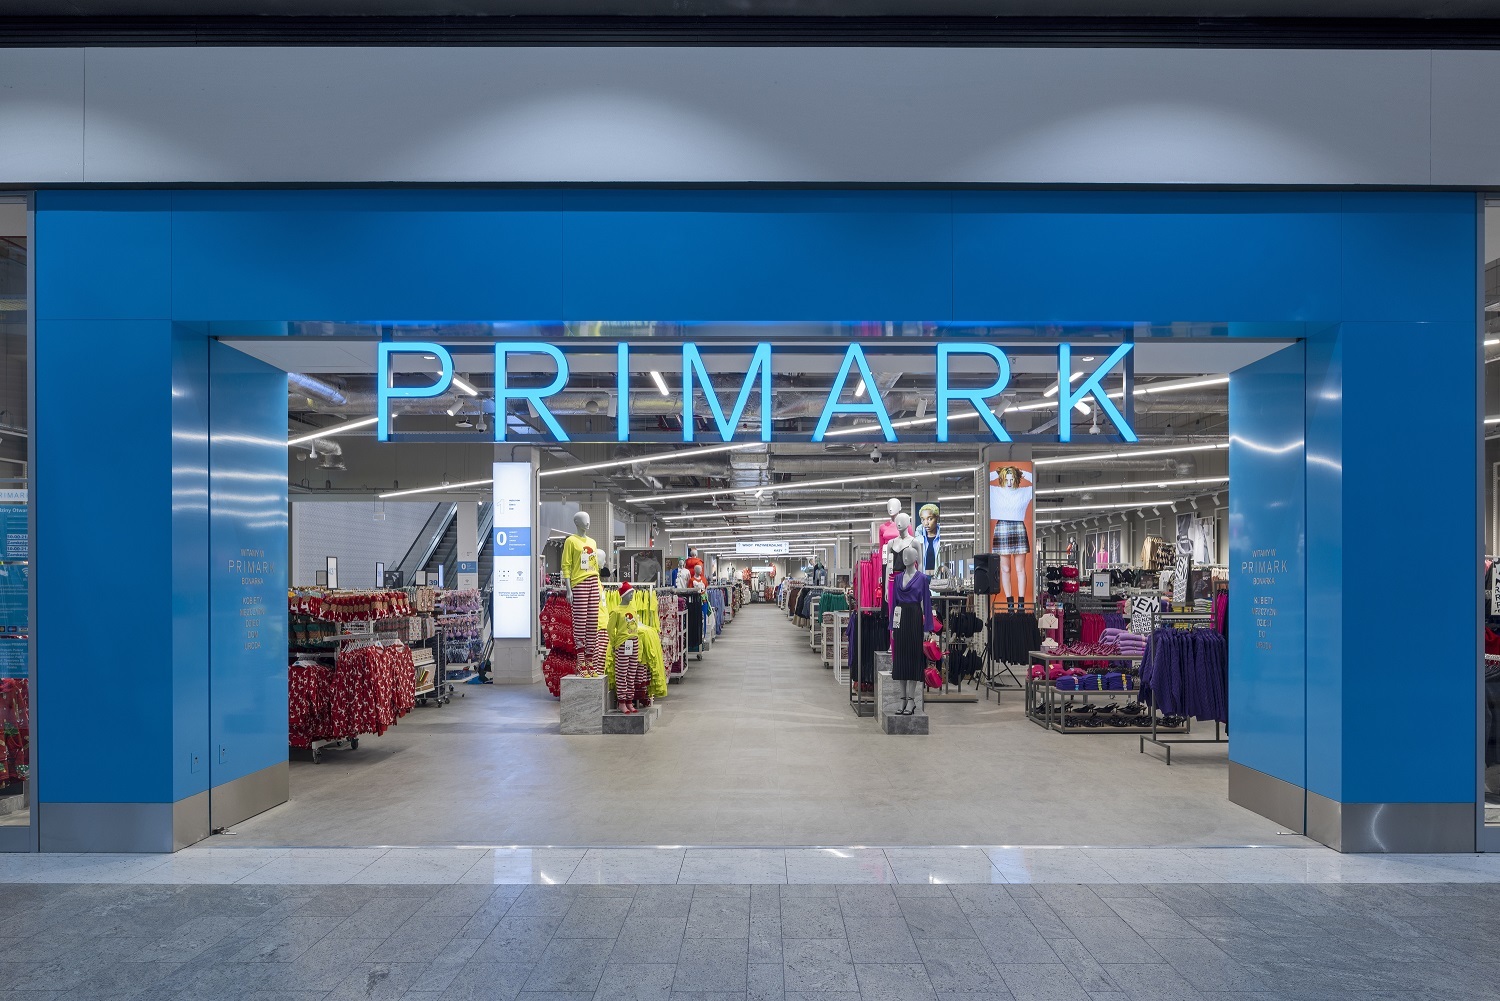 Retailerul irlandez Primark va deschide pe 15 decembrie primul magazin din Romania, în mall-ul ParkLake din Bucureşti, iar anul viitor va inaugura al doilea magazin, în AFI Cotroceni